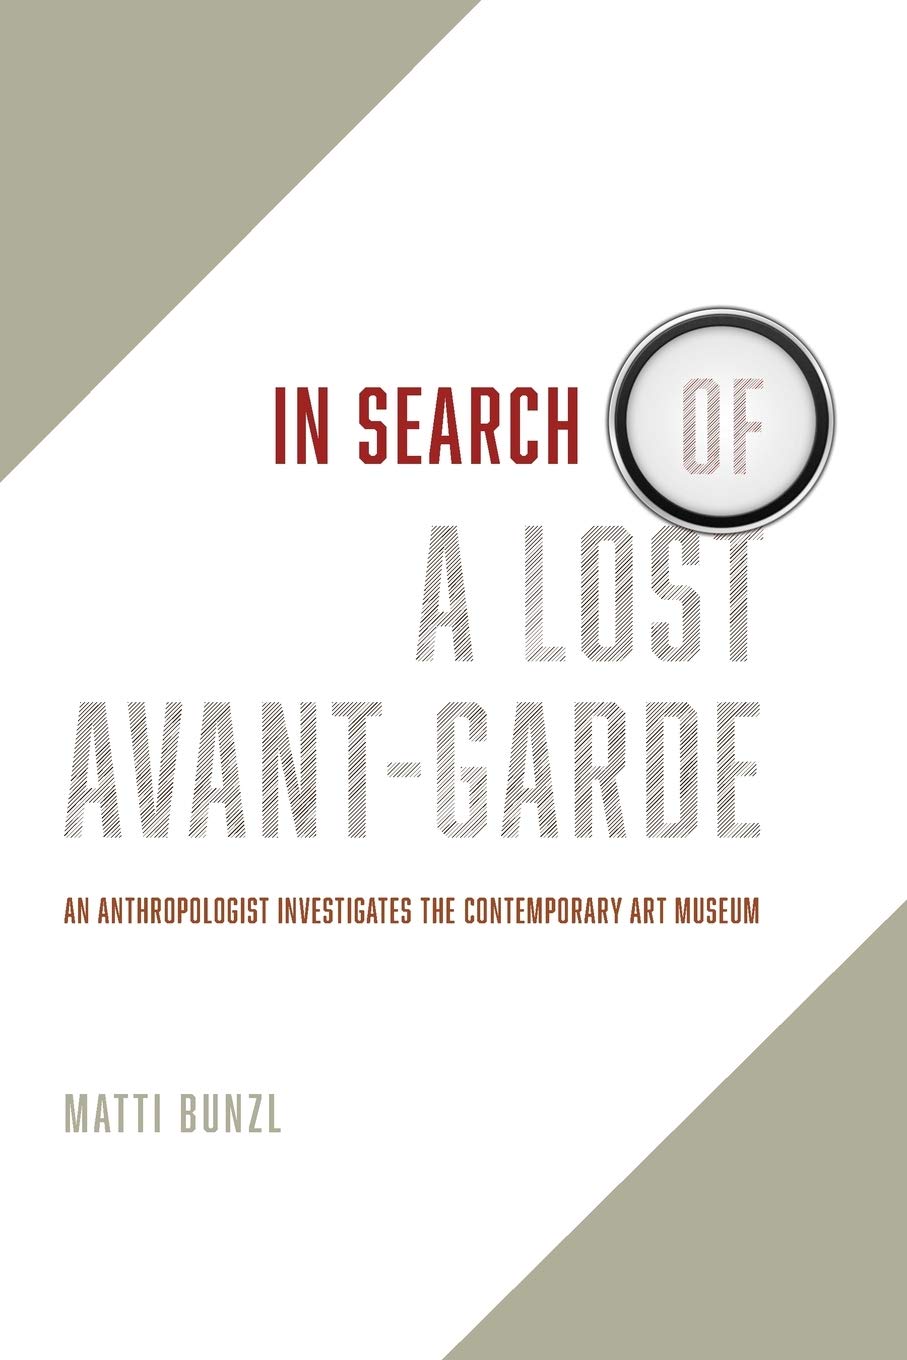 In Search of a Lost Avant-Garde